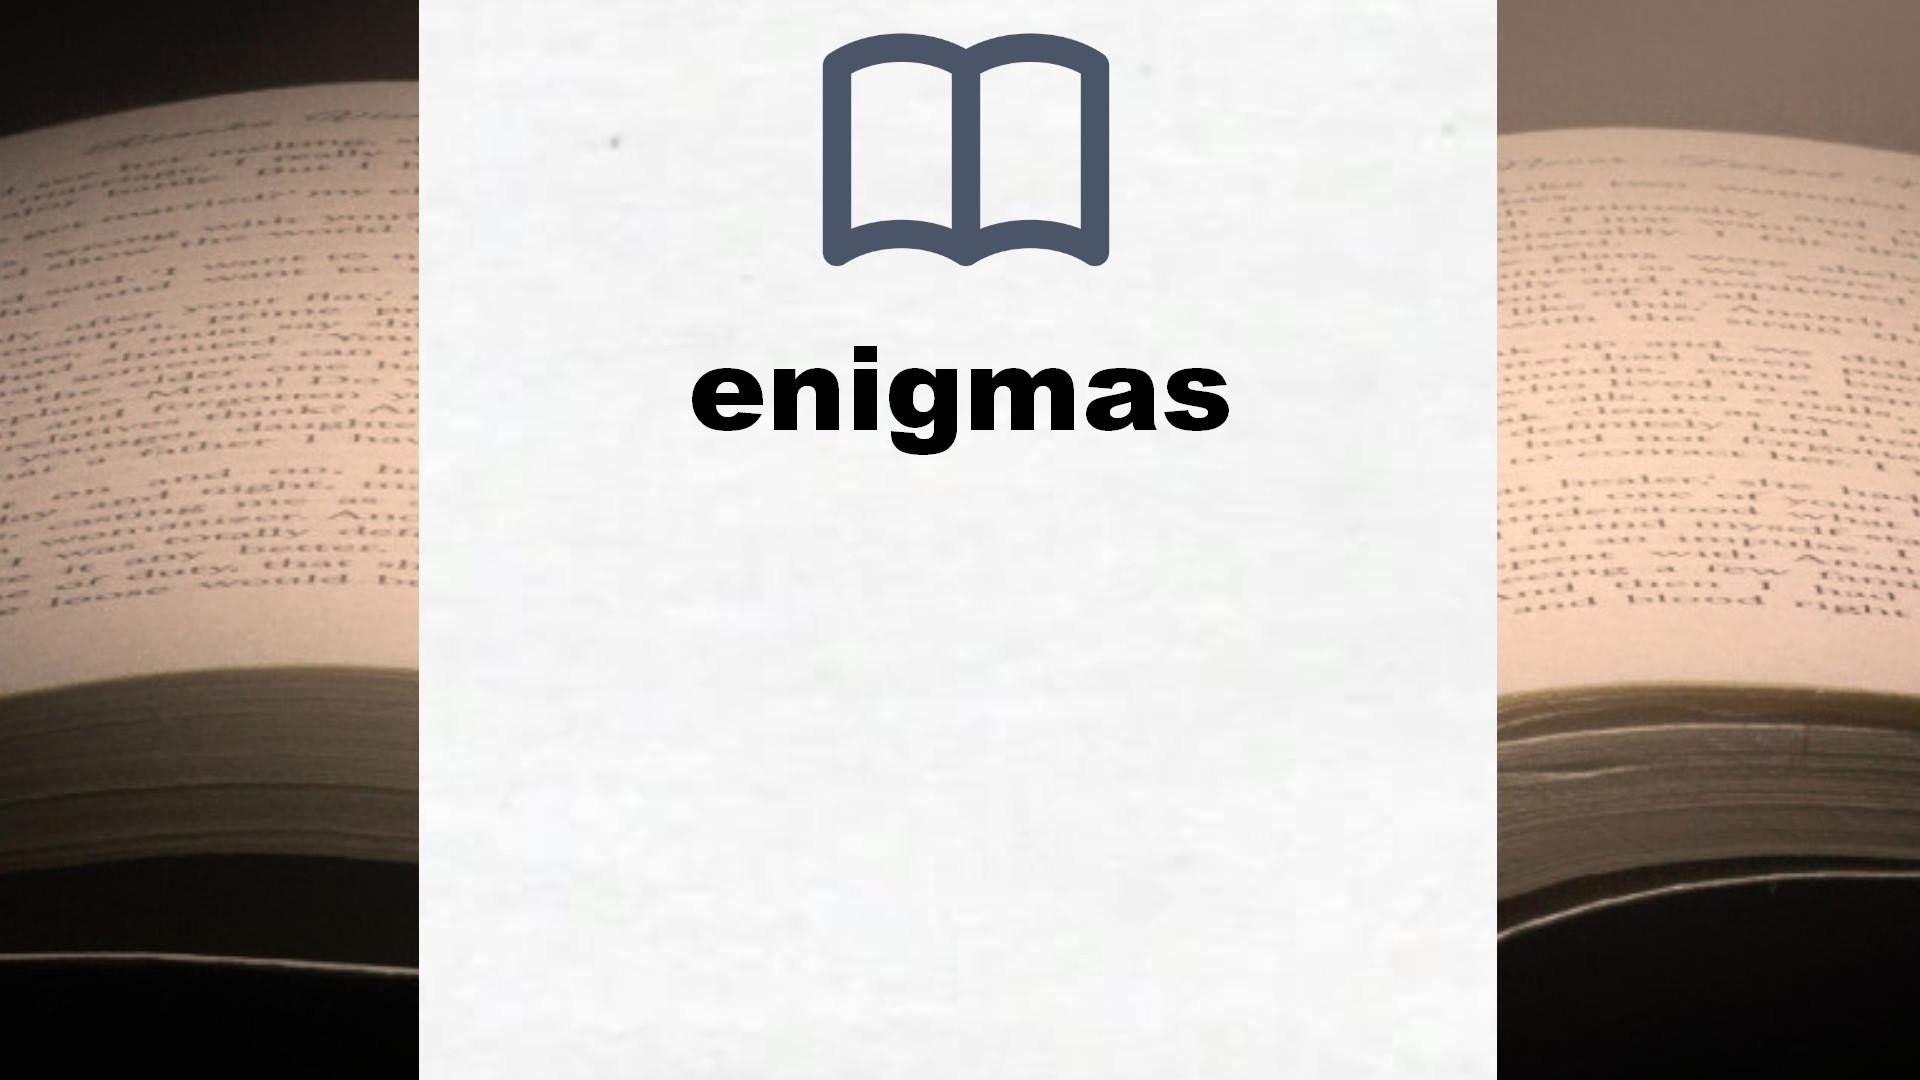 Libros sobre enigmas